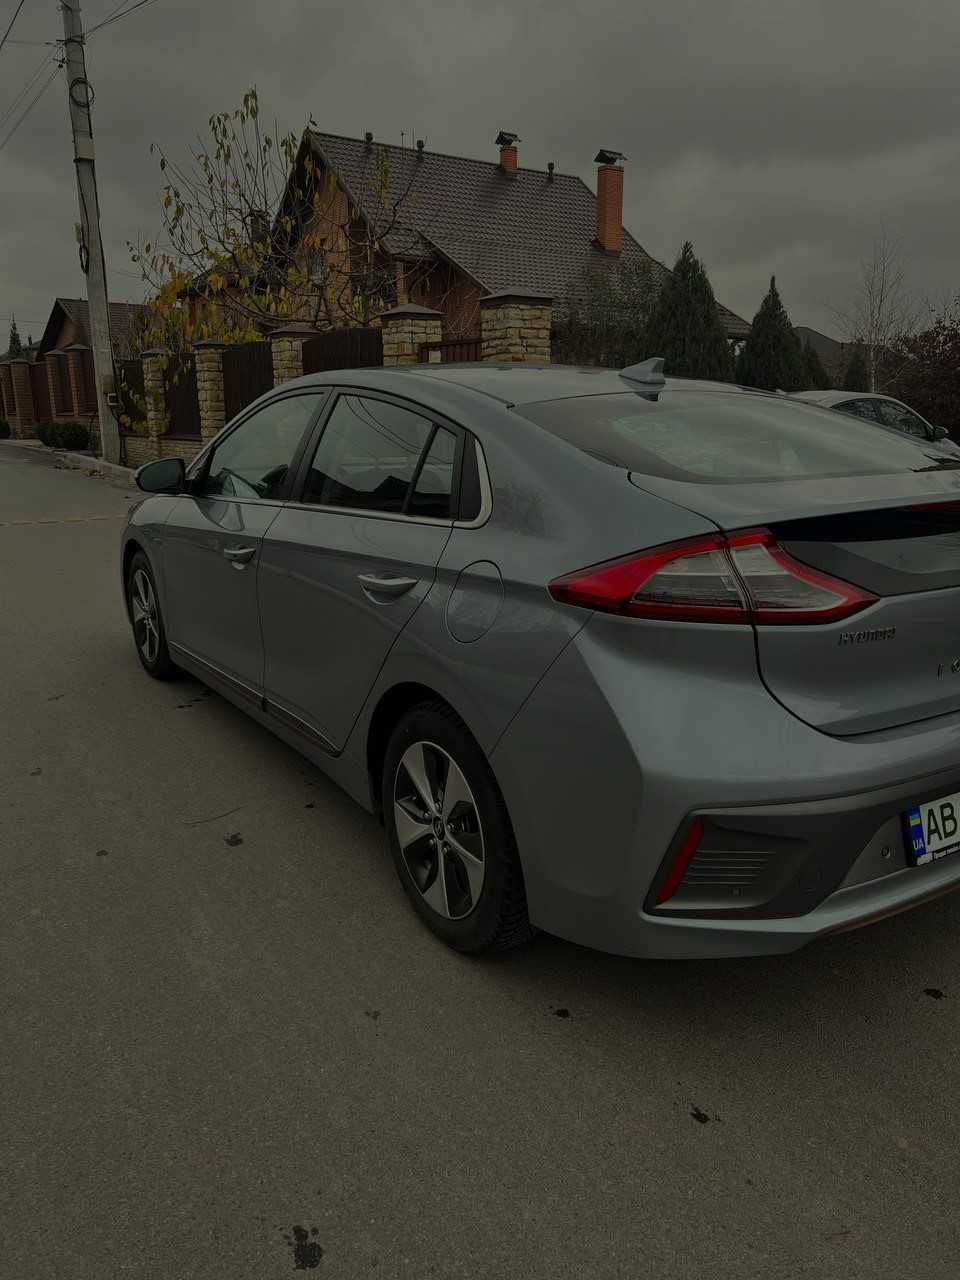 (Eko Car) Оренда електромобілів Вінниця 2018 року (200+ запас ходу)